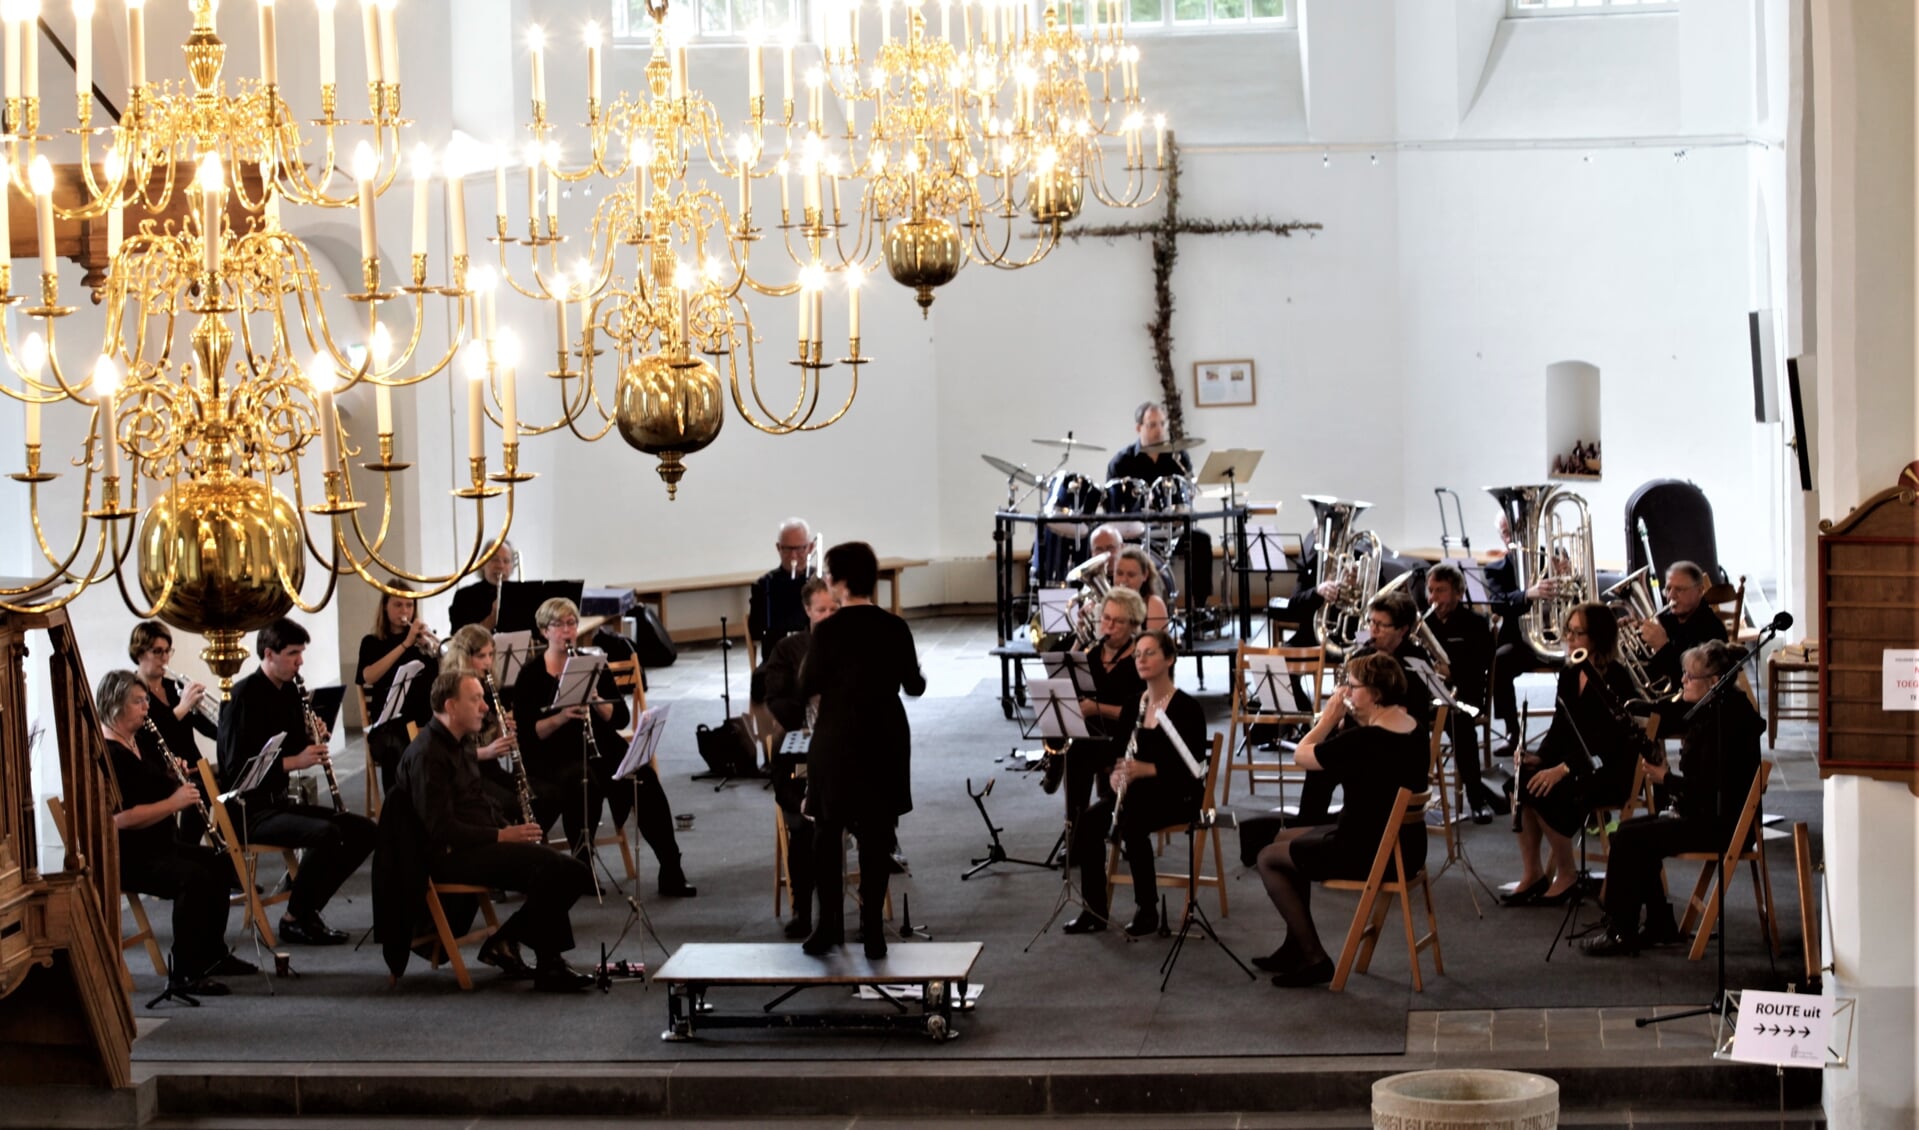 De harmonie van Muziekvereniging Nieuw Leven in Steenderen. Foto: Menno Leistra